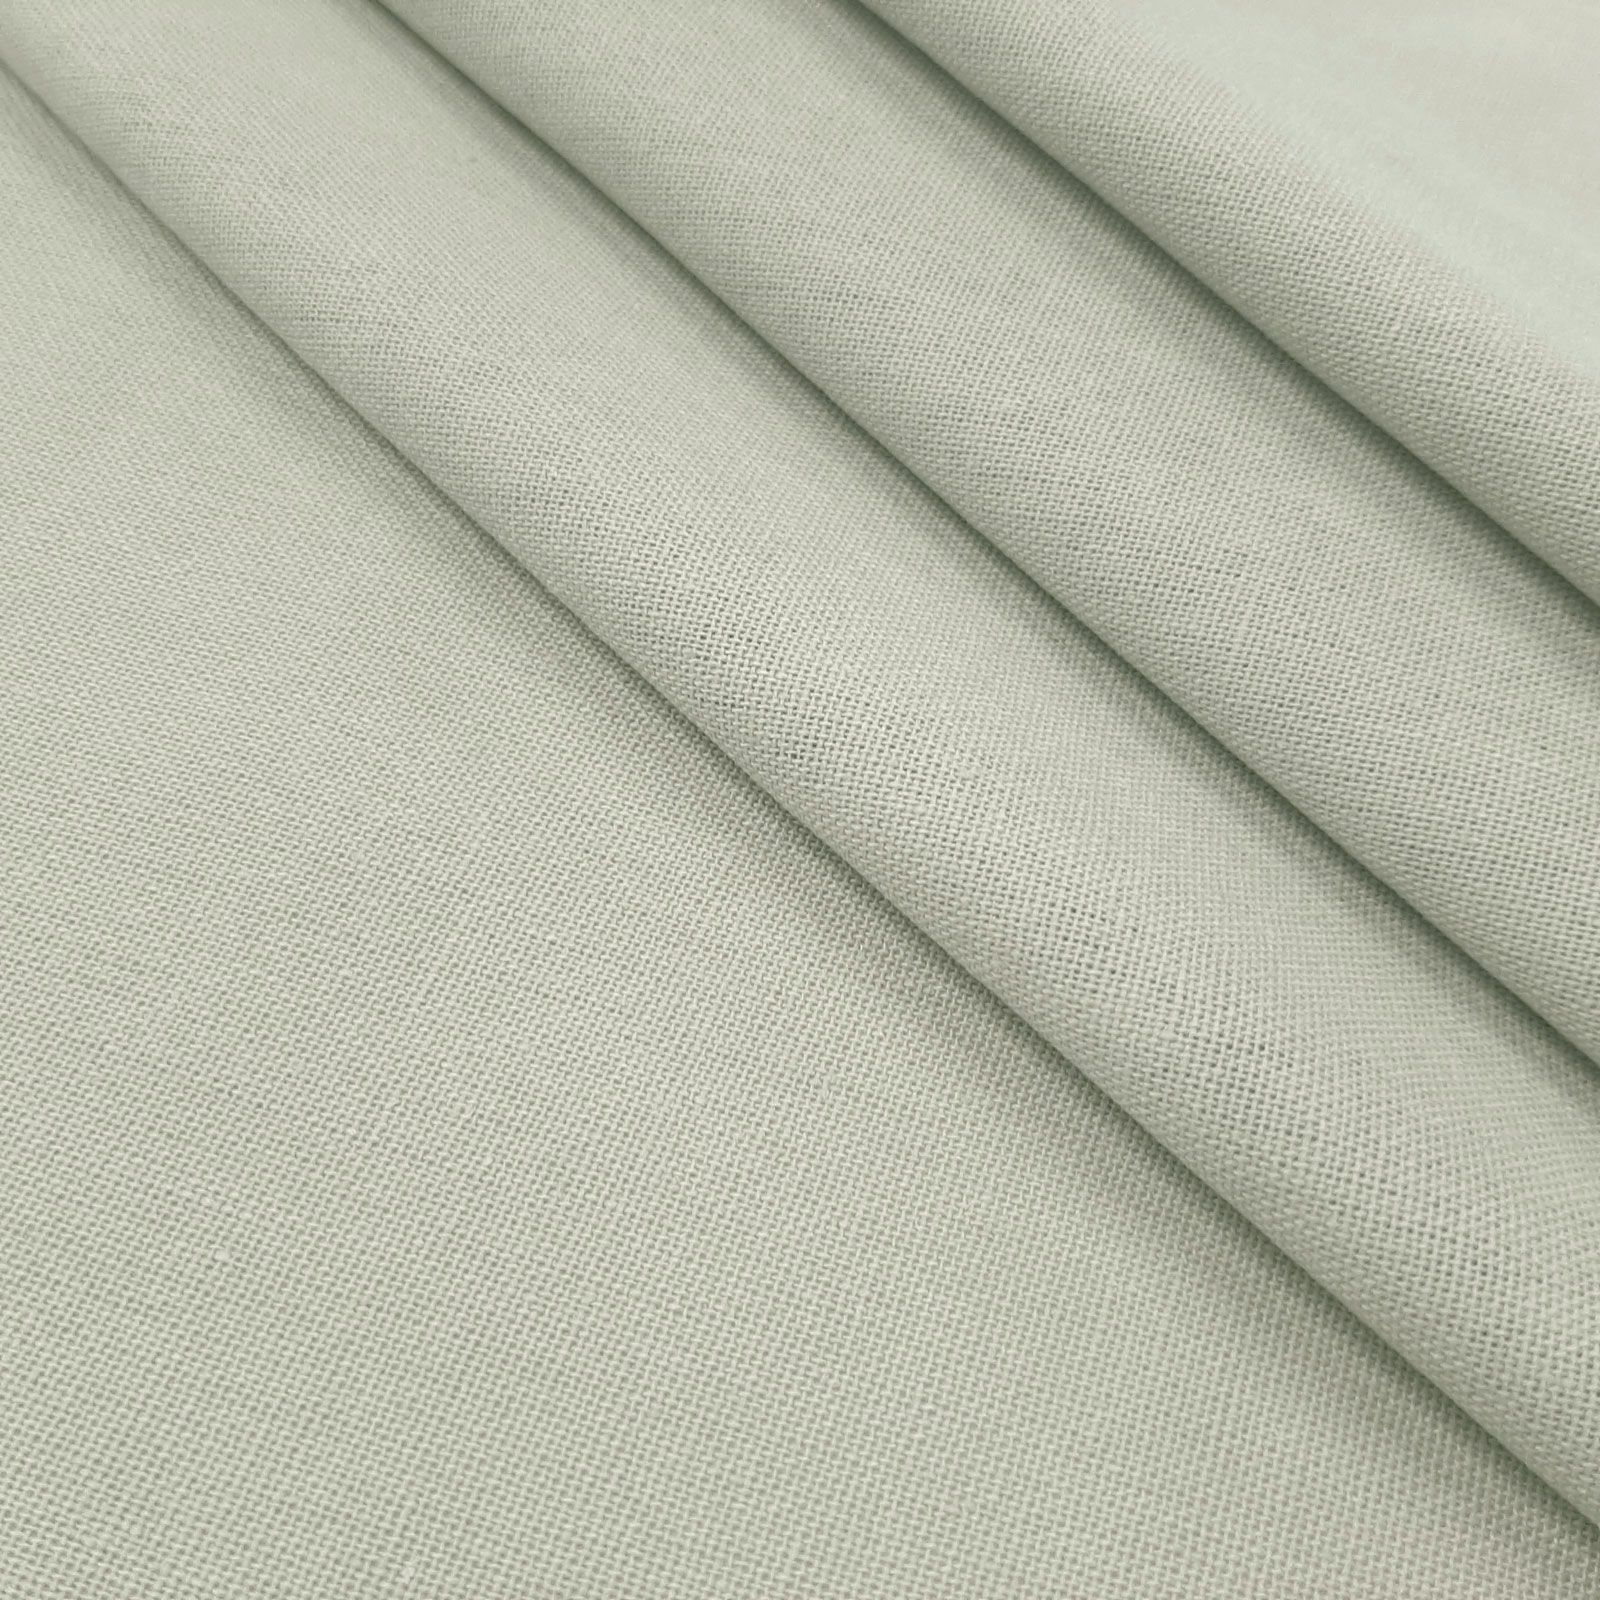 Bella - naturligt tyg av linne och bomull - Ljusgrå